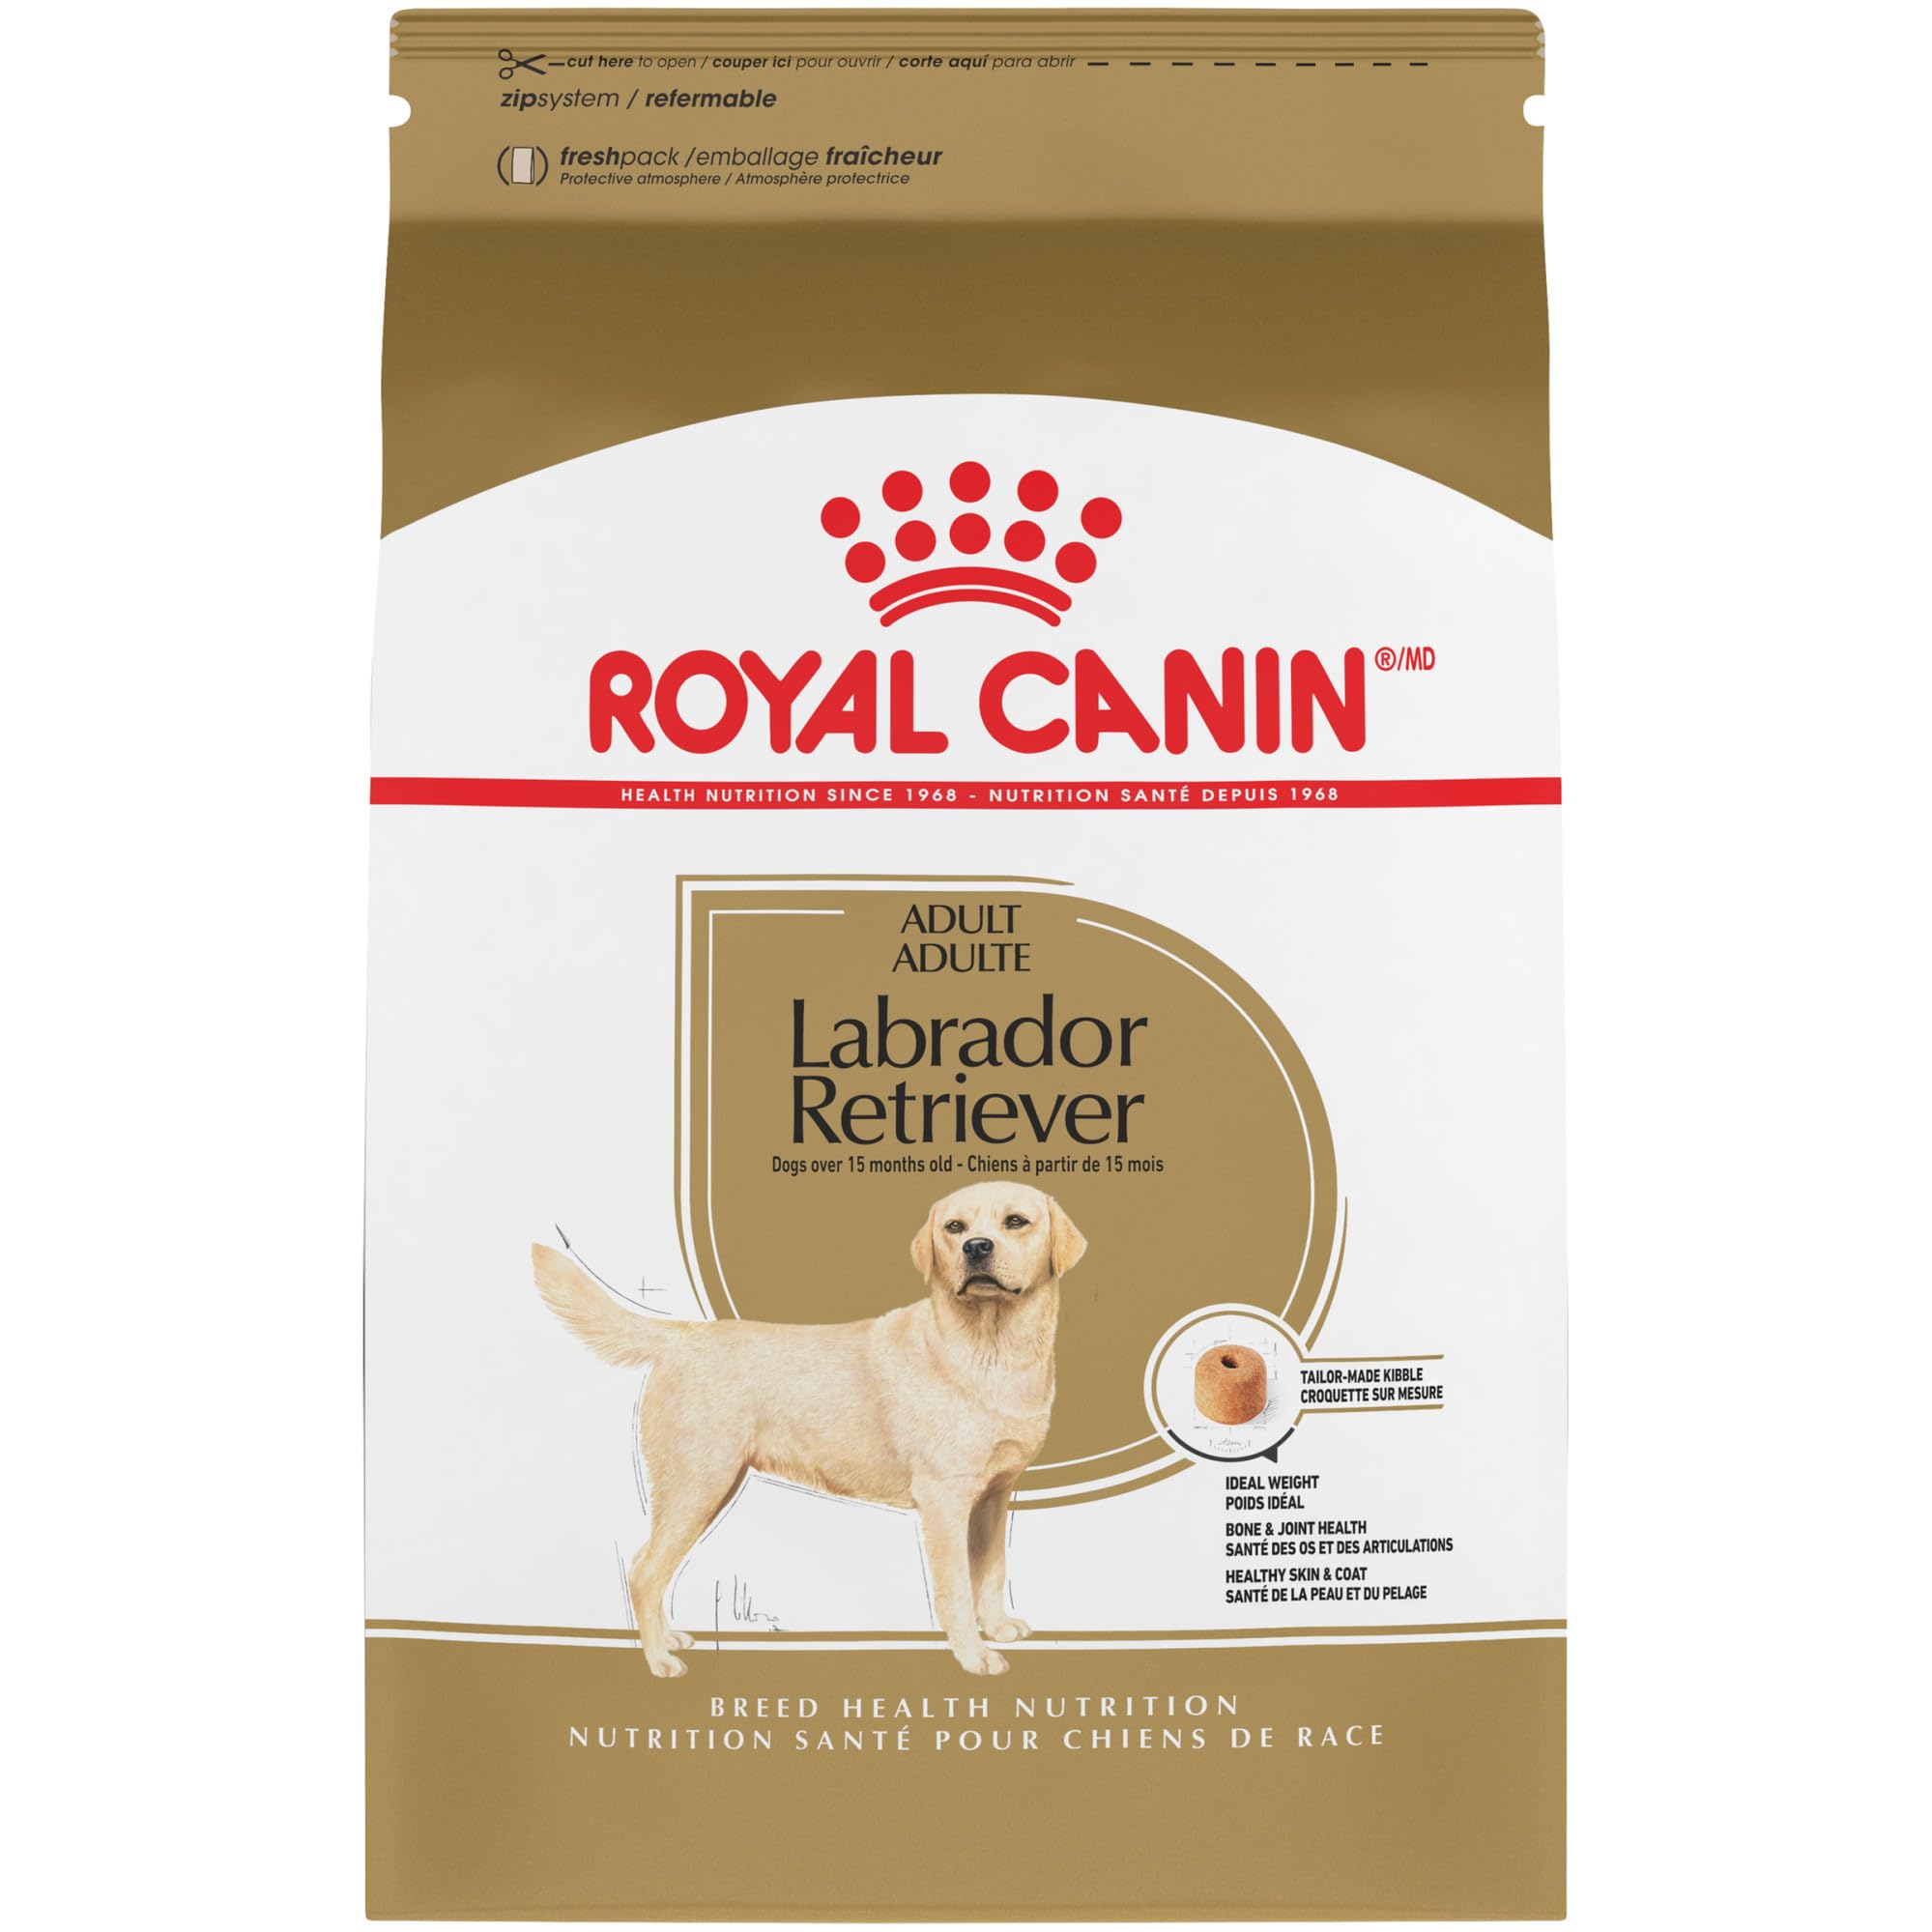 Royal Canin لابرادور ريتريفر طعام جاف للكلاب البالغة...